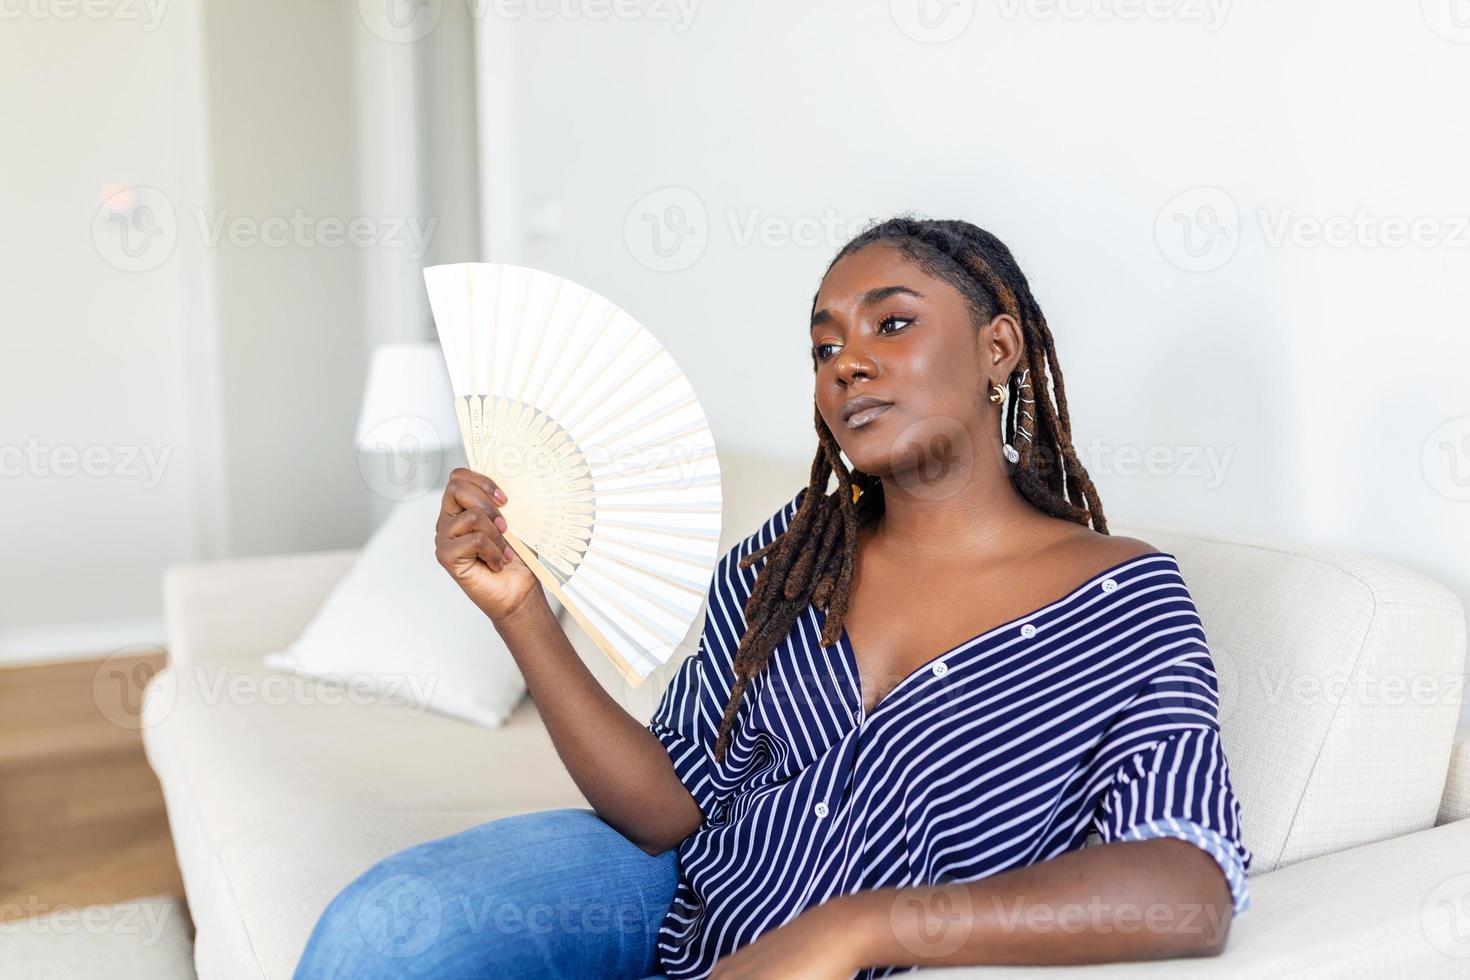 cansado afro mujer sufrimiento desde golpe de calor o caliente verano plano sin aire acondicionado, utilizando ondulación admirador, sentado en vivo habitación a hogar. calentamiento excesivo foto